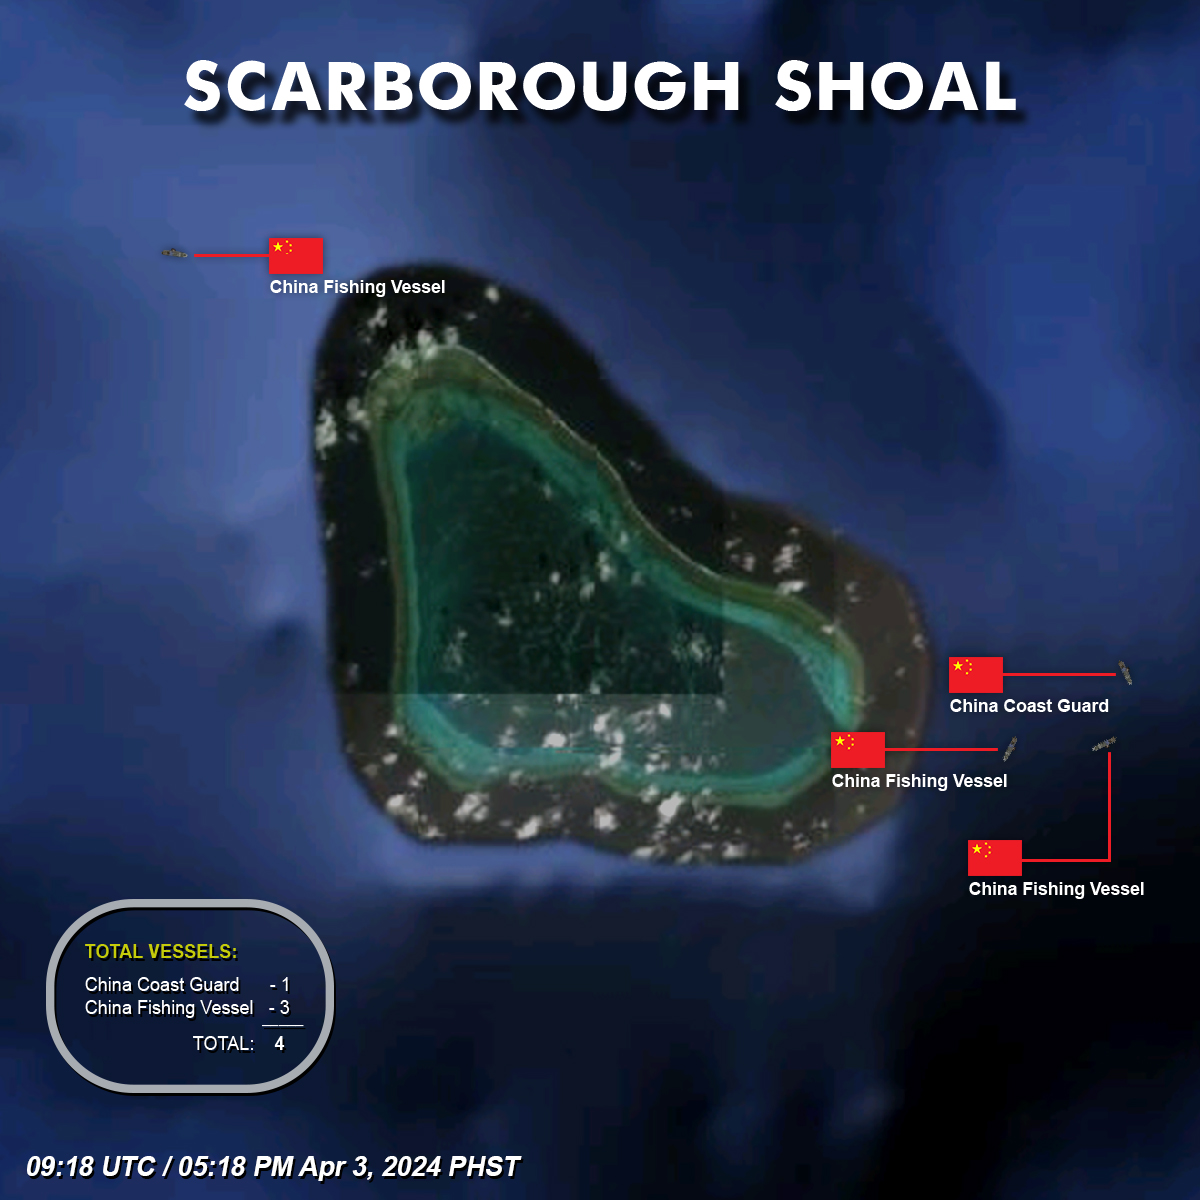 Scarborough Shoal, Total of 4 China Vessels. 
05:18 PM April 3, 2024 PHST  

#ScarboroughShoal #MaritimeAwareness #DailyAwareness